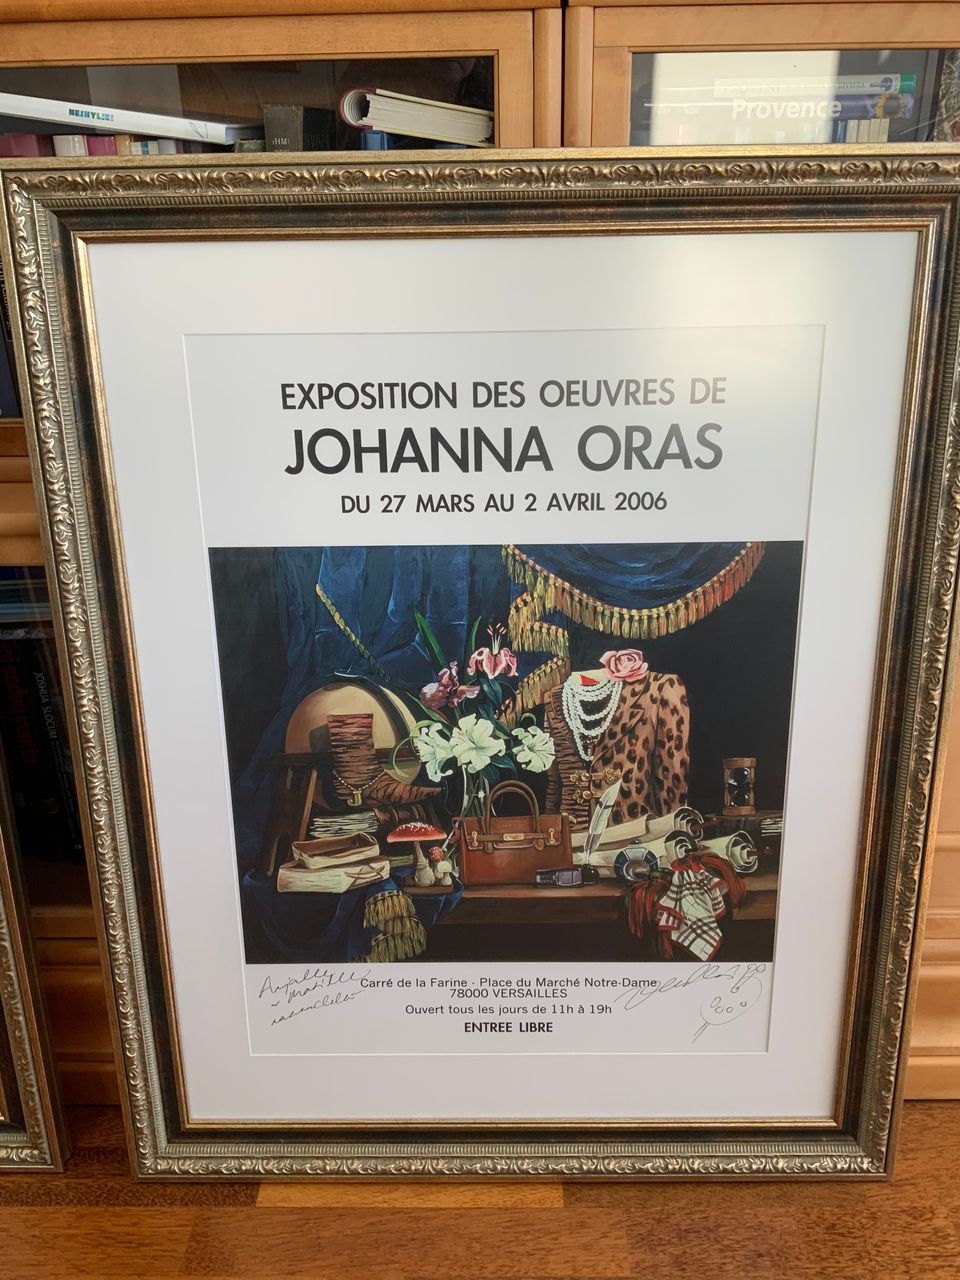 Johanna Oras kehystetty näyttelyjuliste